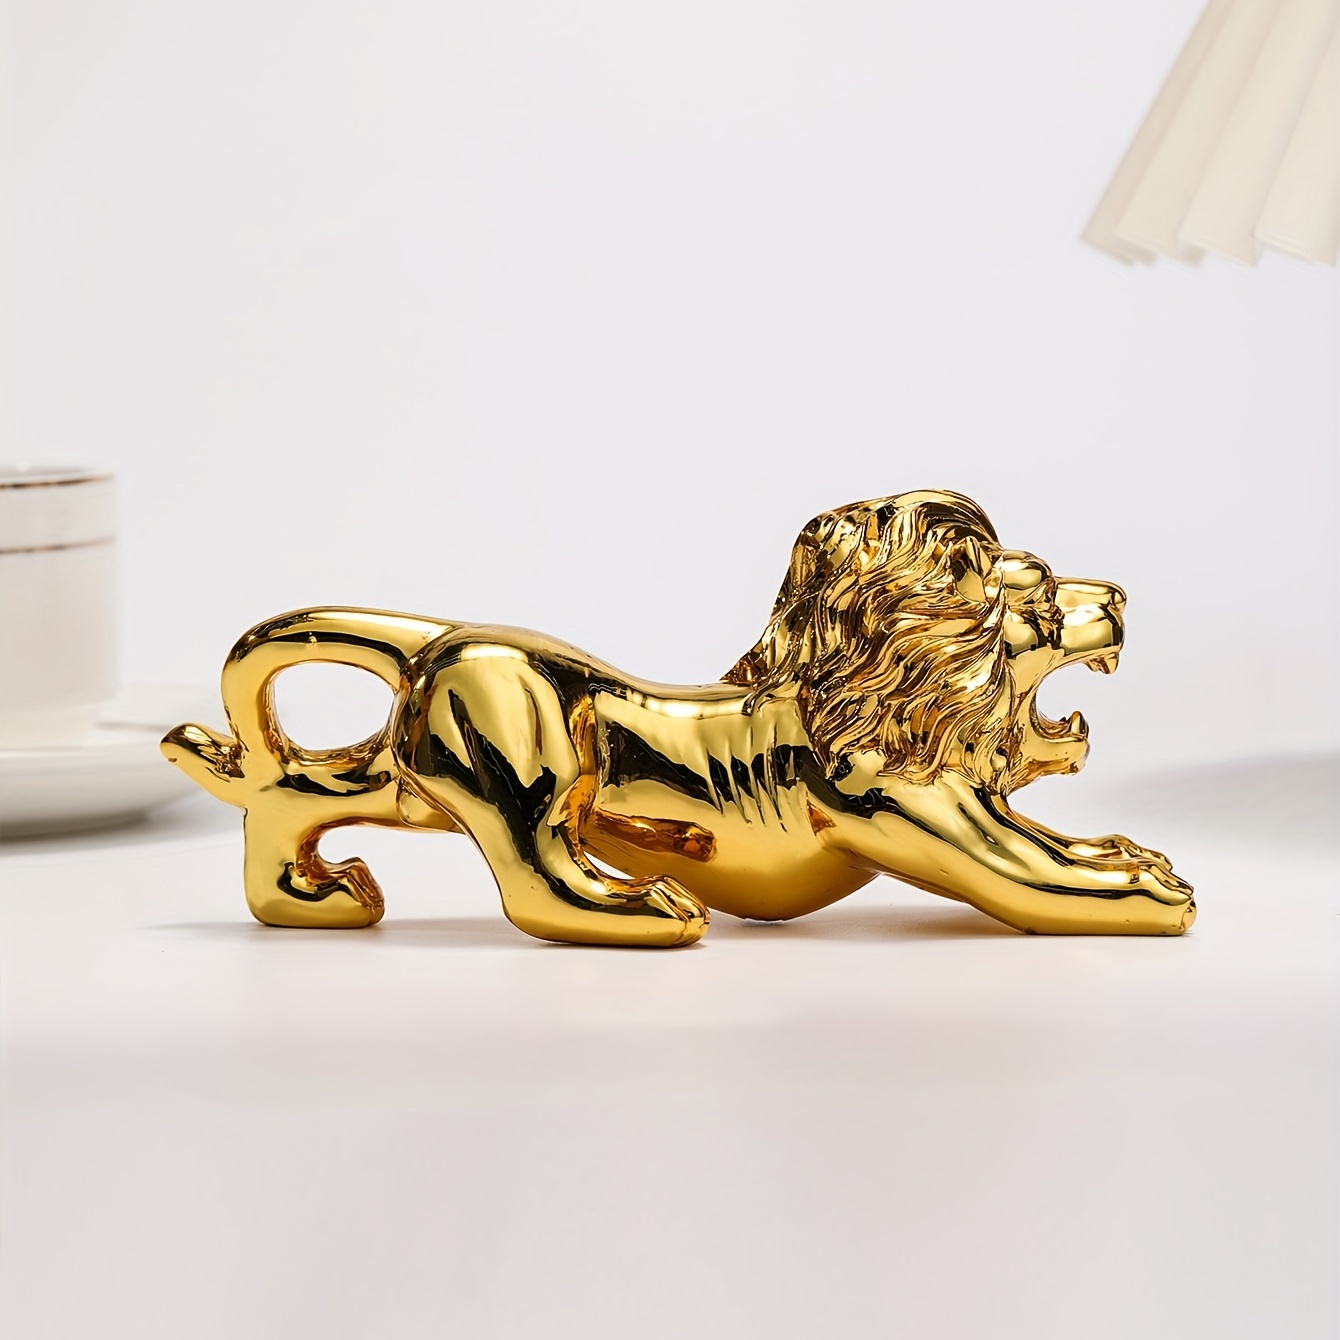 Leopard Statue Cheetah Figurine Brass Art Crafts for Home Office Shelf  Decor 